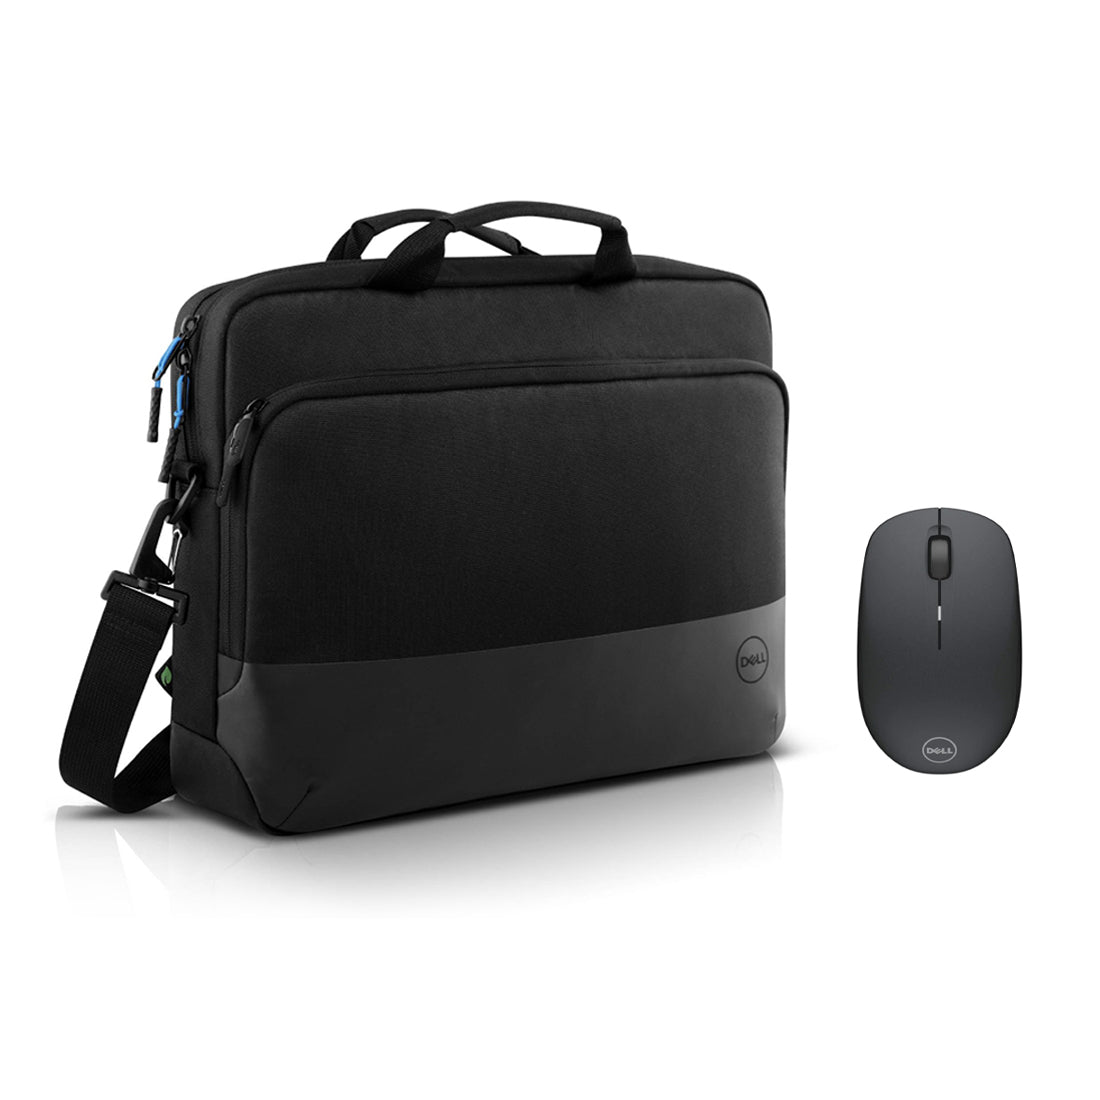 Dell PO1520CS Briefcase & WM126 Wireless Optical Mouse - Black - حقيبة حاسوب محمول و فأرة - Store 974 | ستور ٩٧٤